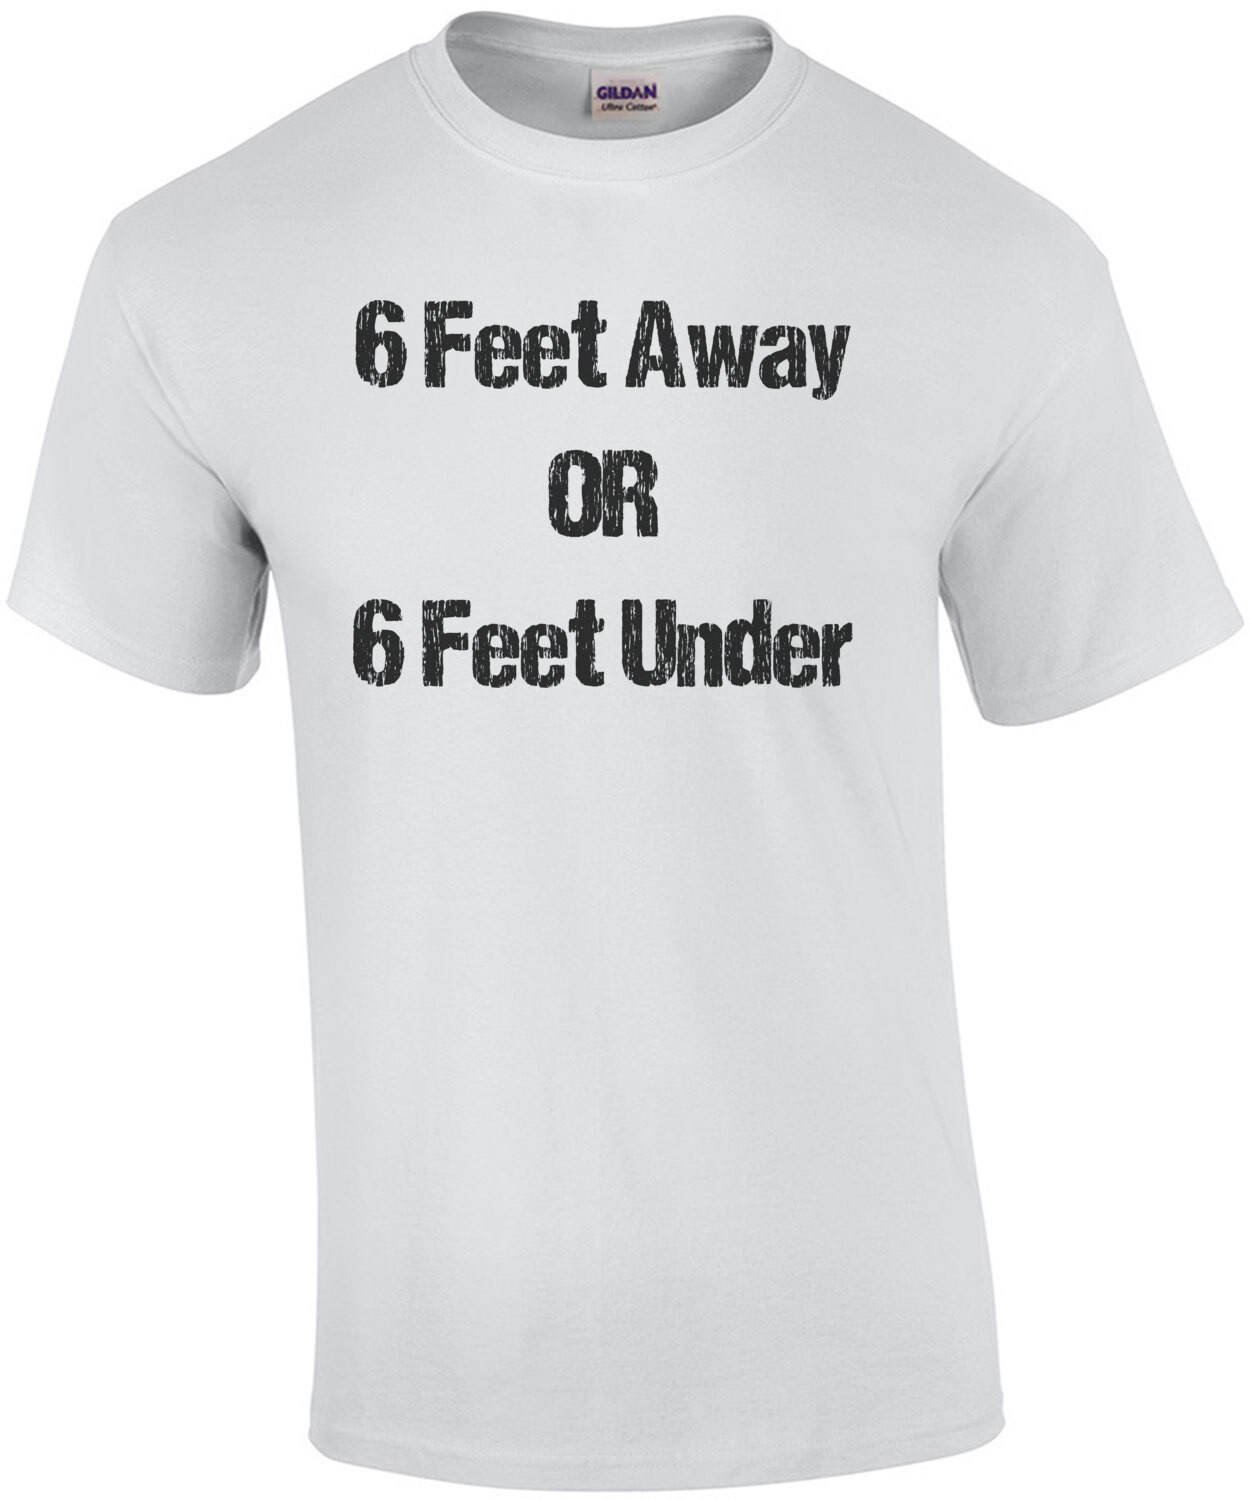 6 Feet Away or 6 Feet Under - Social Distancing Shirt